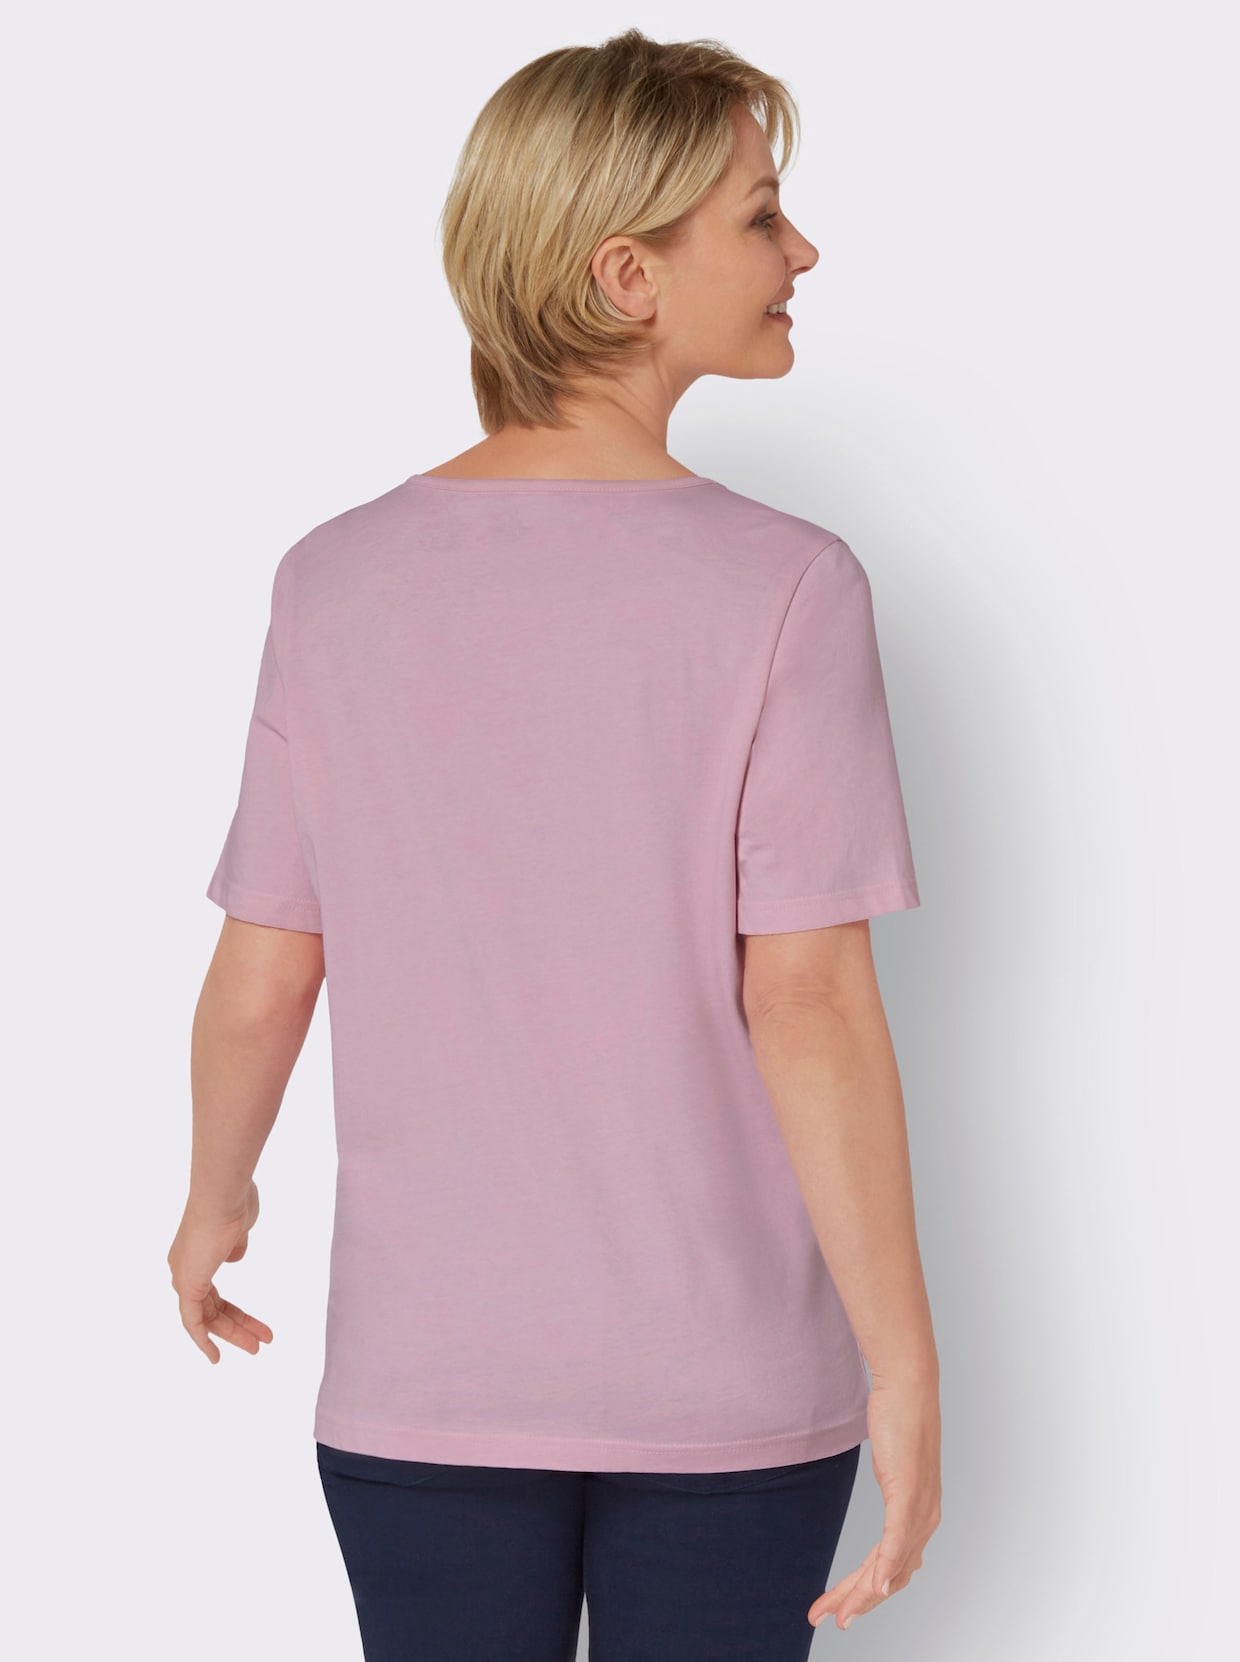 Kurzarm-Shirt - rosé